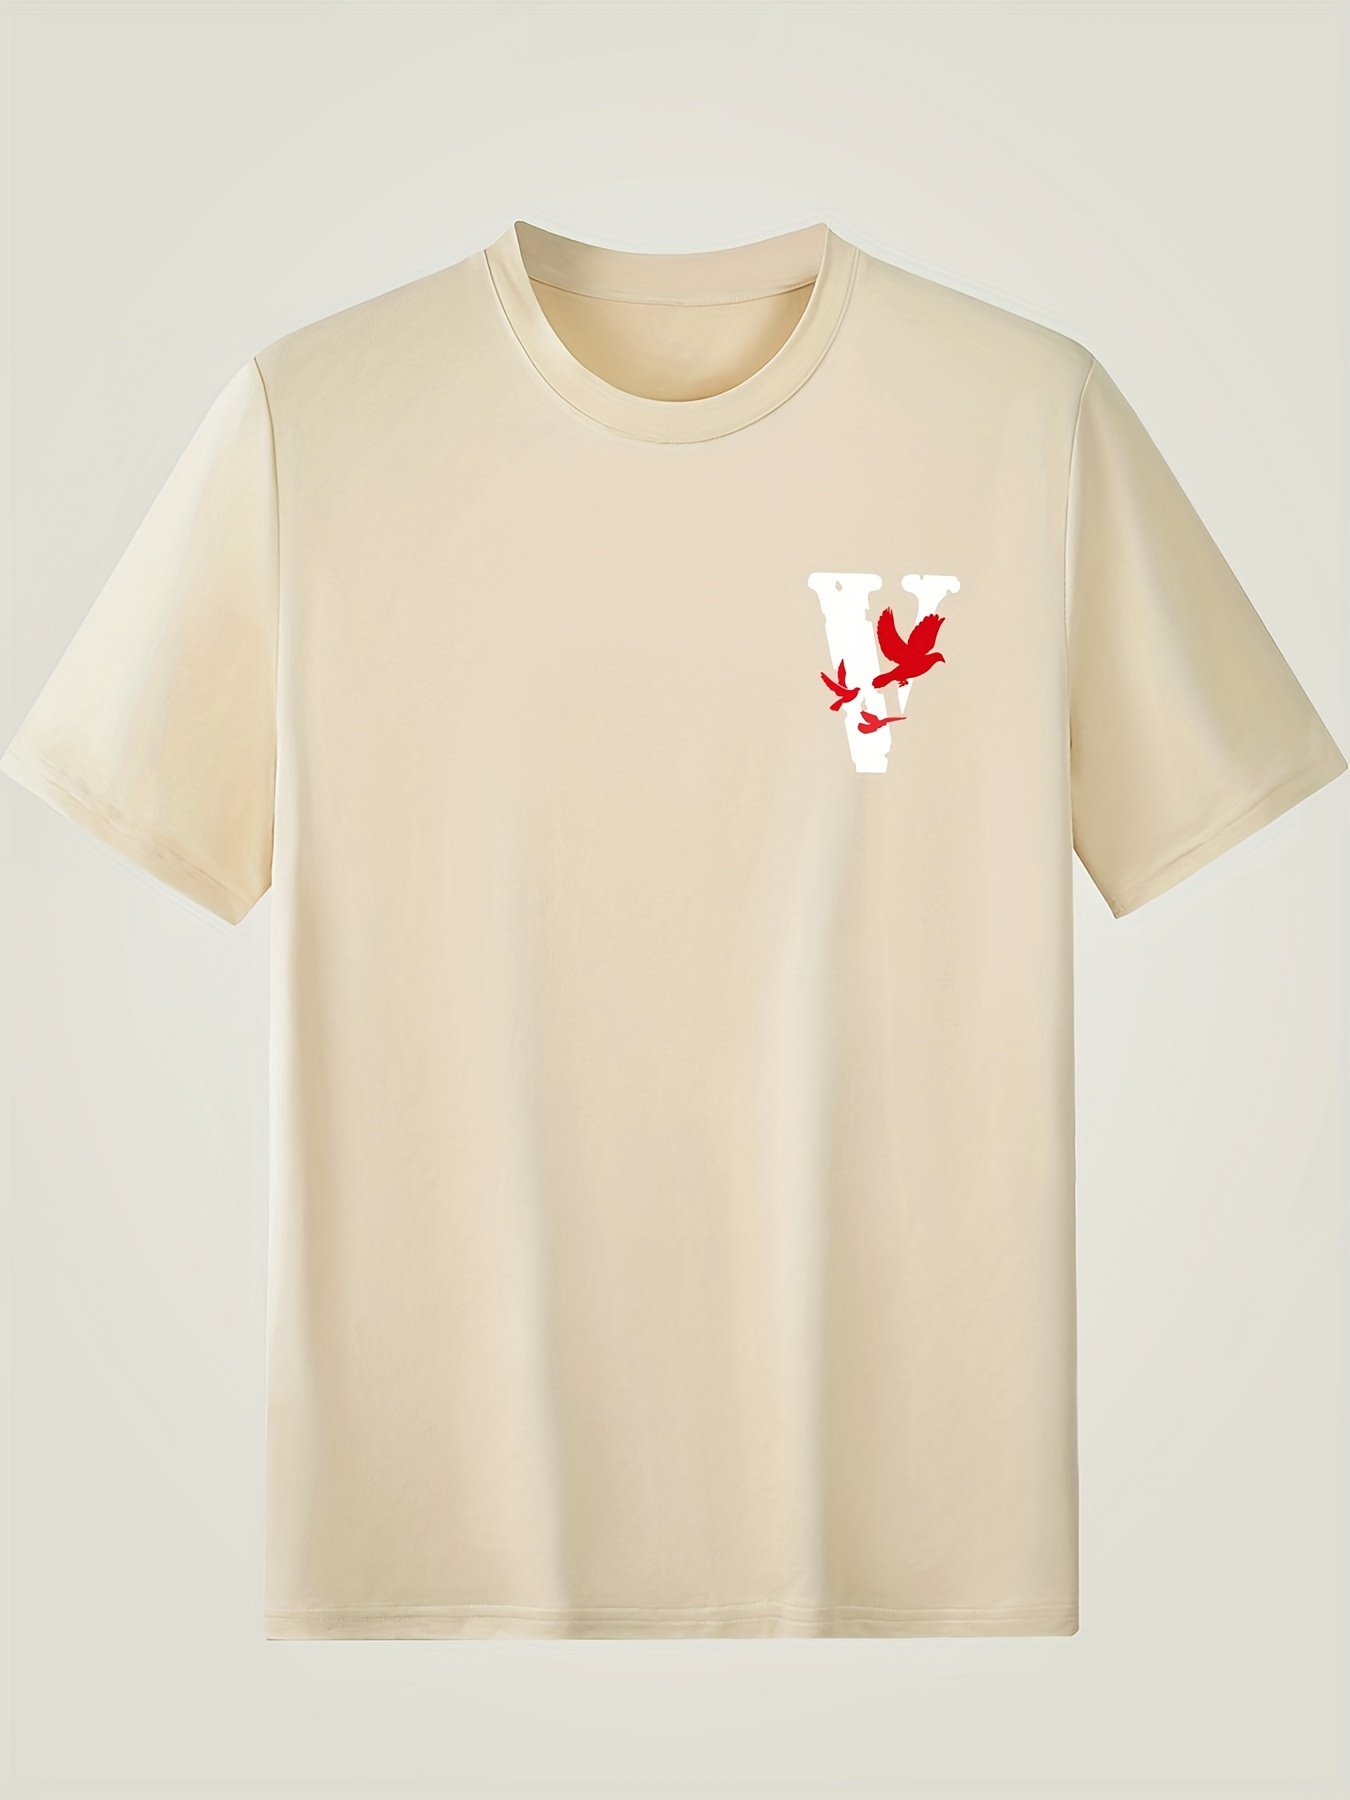 Men's V Letter Print Round Neck Short Sleeve Casual T-shirt